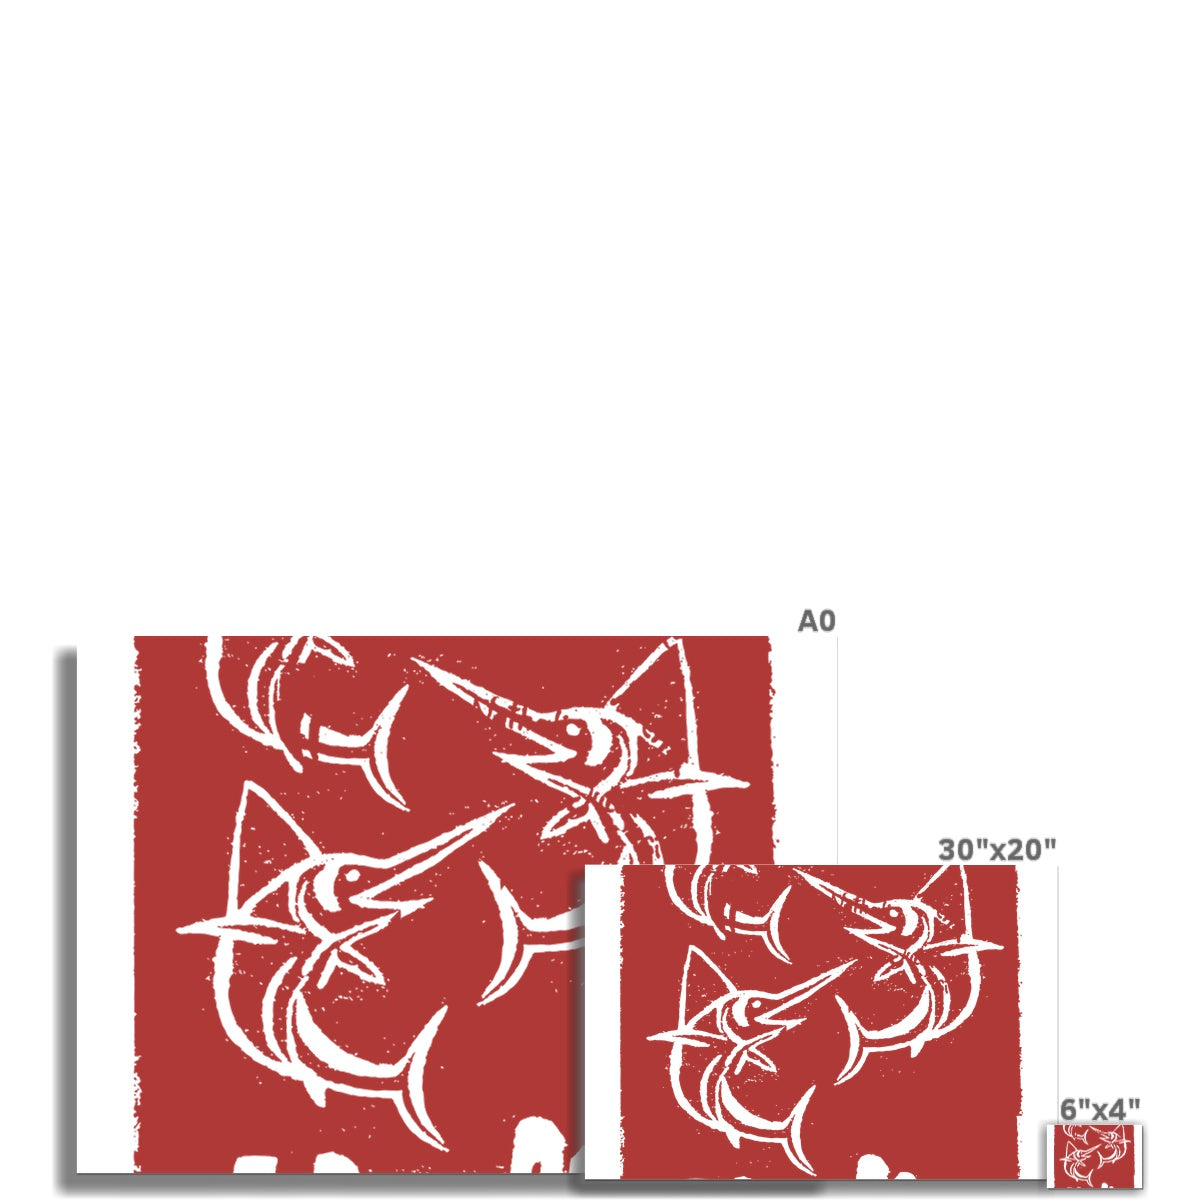 AQUA HMP2 - 07 - Marlin - Rolled Canvas